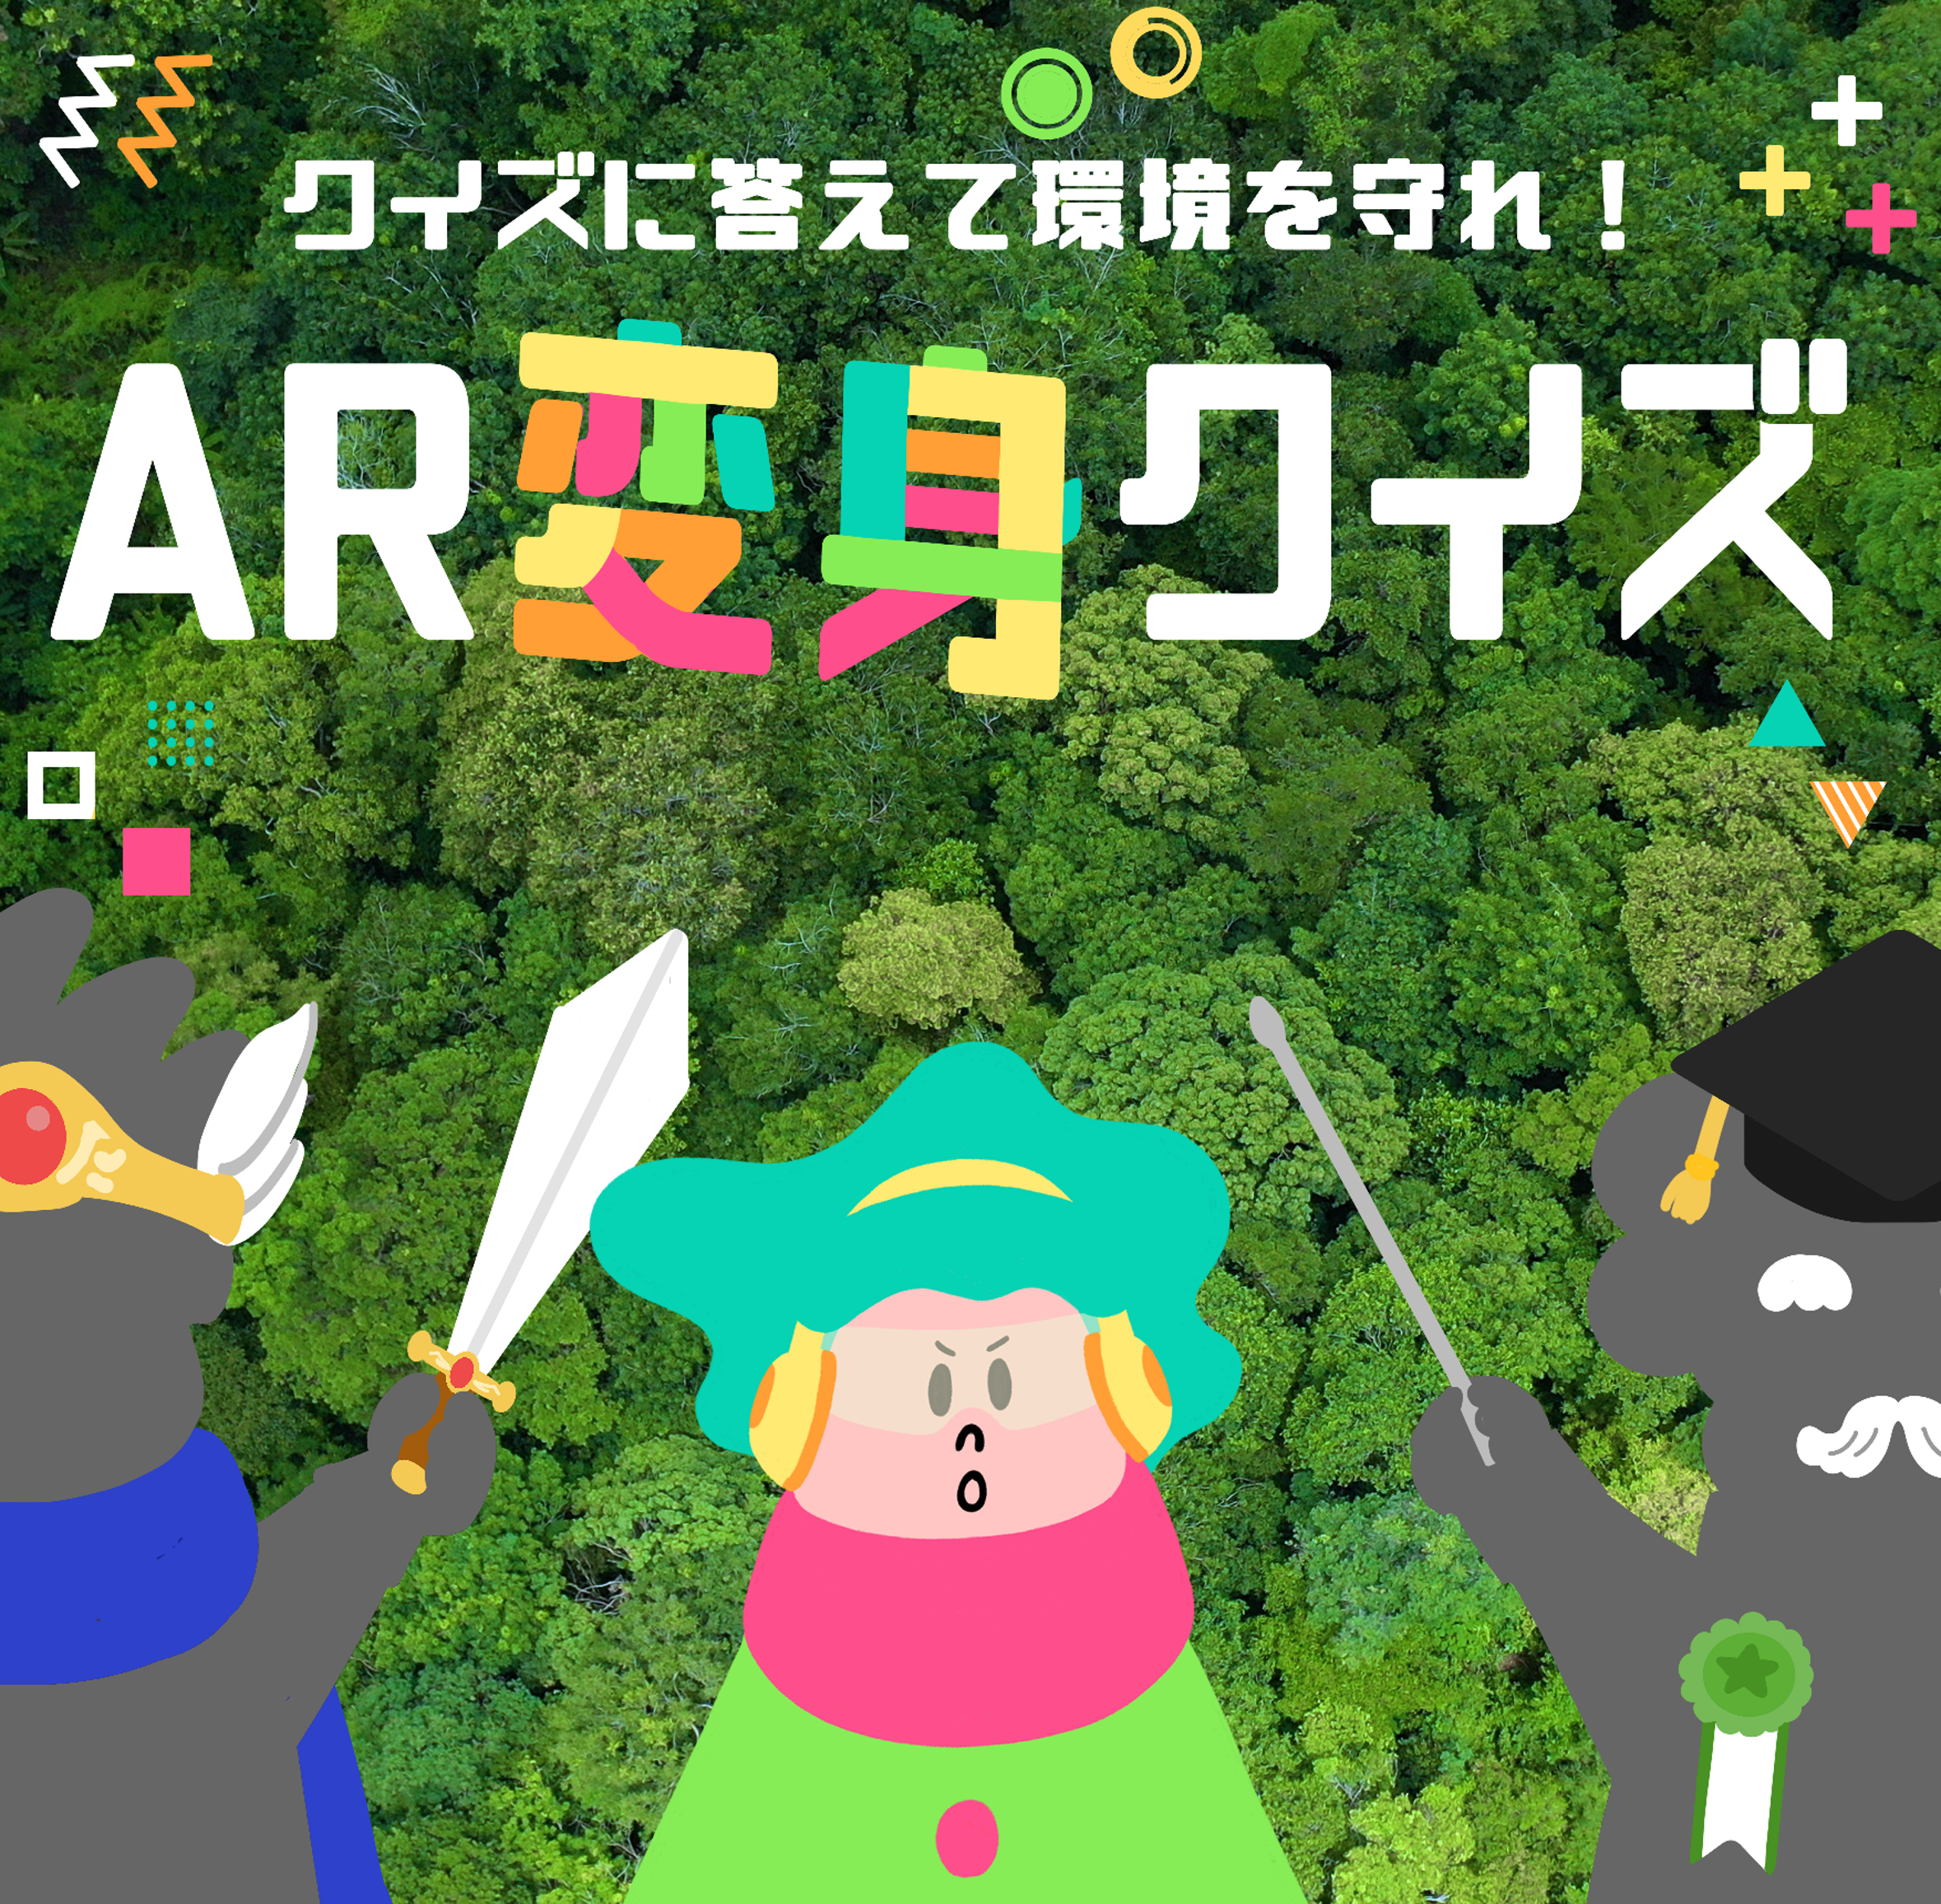 「東京卍リベンジャーズ」の原画展に合わせて池袋でARスタンプラリーを開催！推しキャラクターのARフォトフレームを集めよう